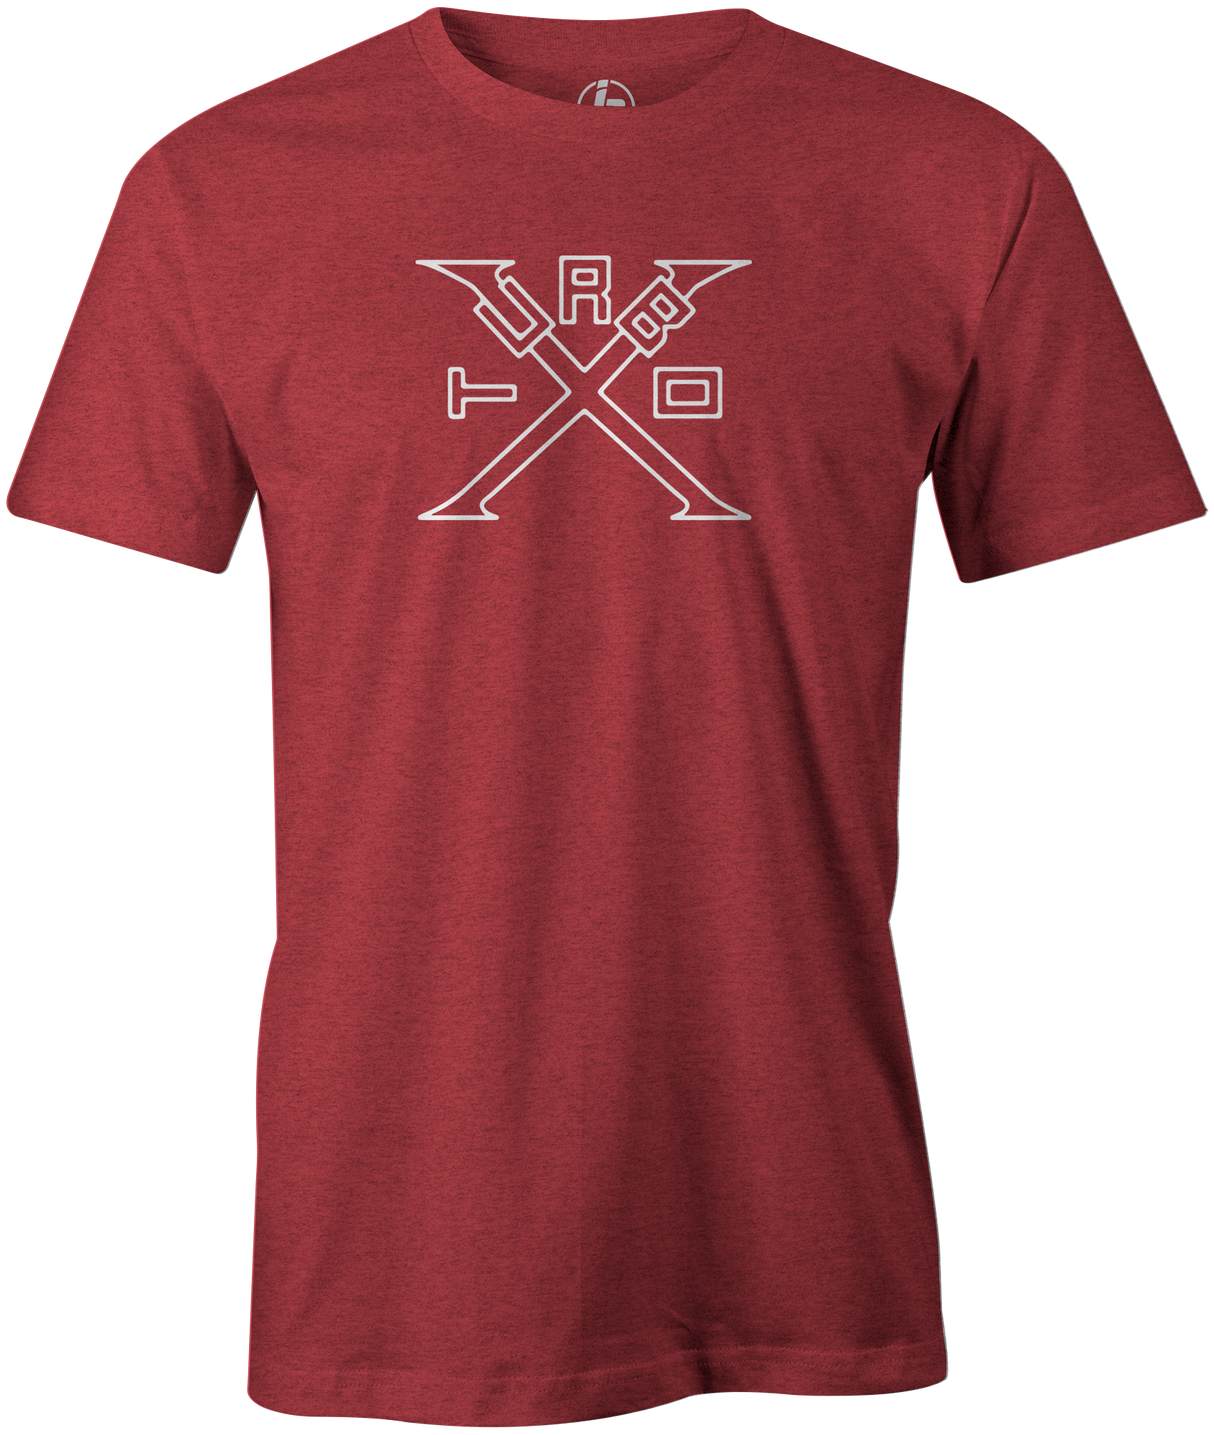 Turbo X Men's T-Shirt, Red, bowling, bowling ball, ebonite, ebonite bowling, classic, vintage, retro, throwback, original, old school, tee, tee shirt, tee-shirt, tshirt.